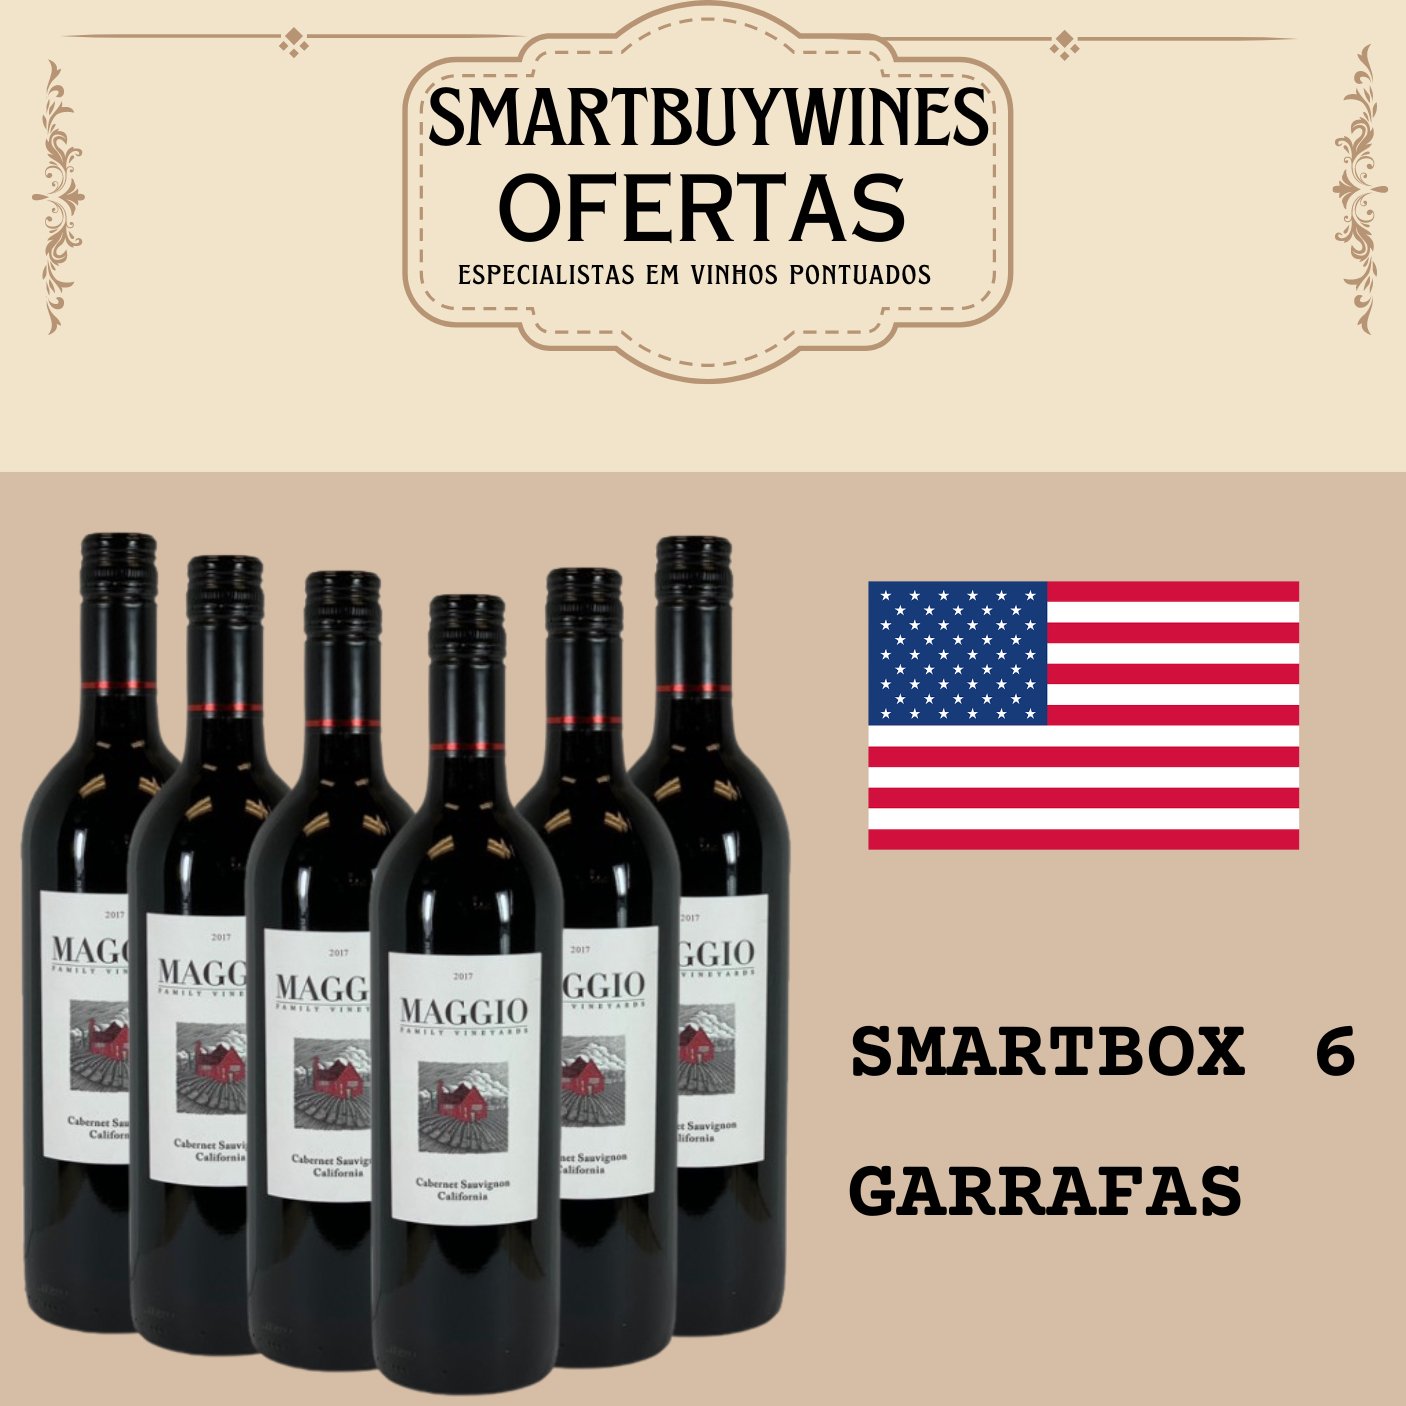 SMARTBOX 6 garrafas - Maggio Cabernet Sauvignon, Lodi, California 2018 - SmartBuyWines.com.br